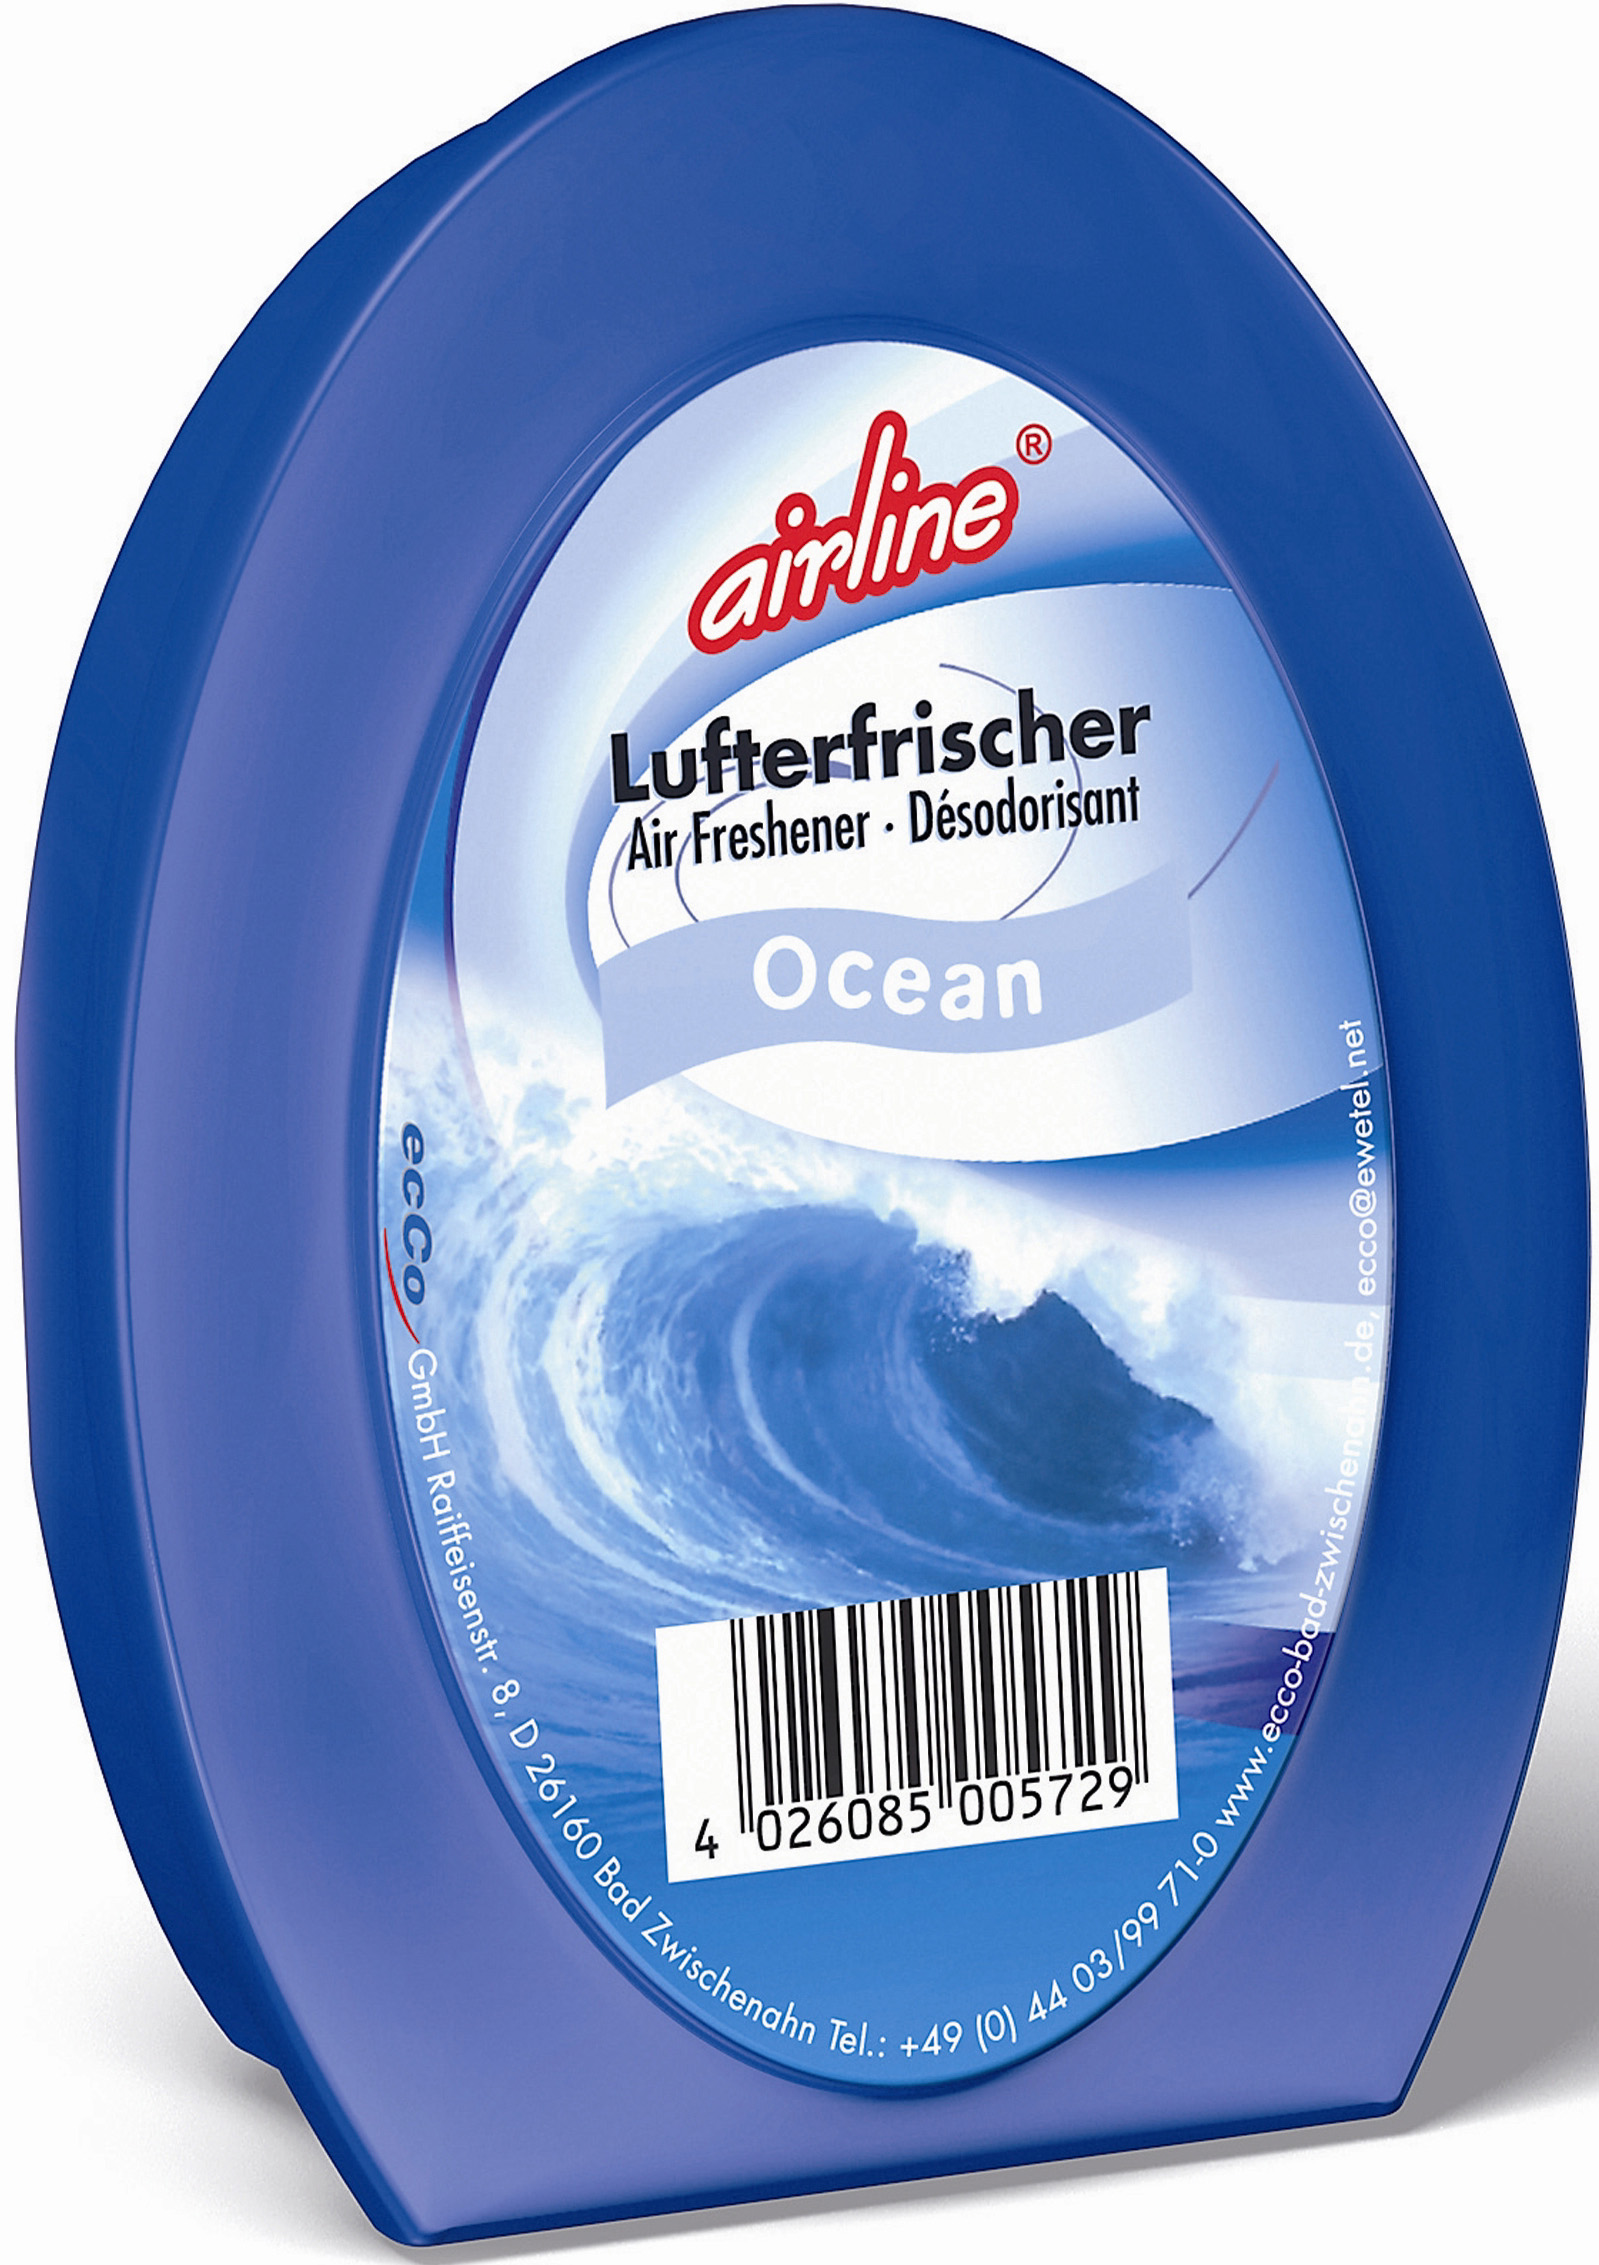 00572 - air freshener gel ocean 150 g